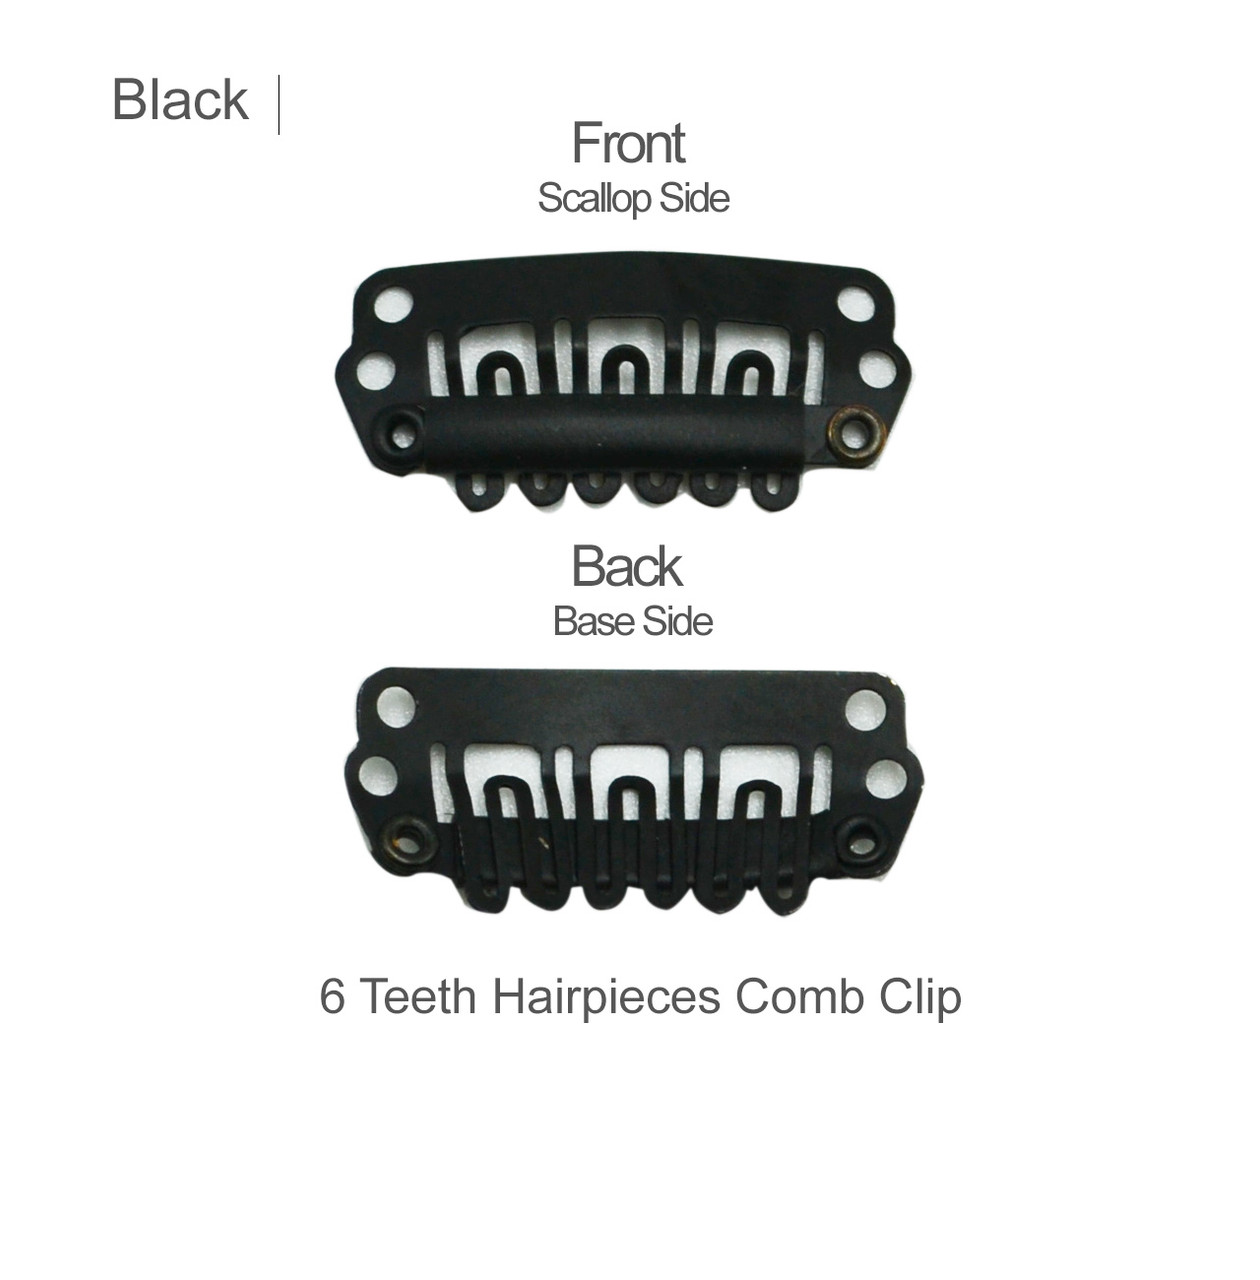 New Mini-Comb Snap Clips